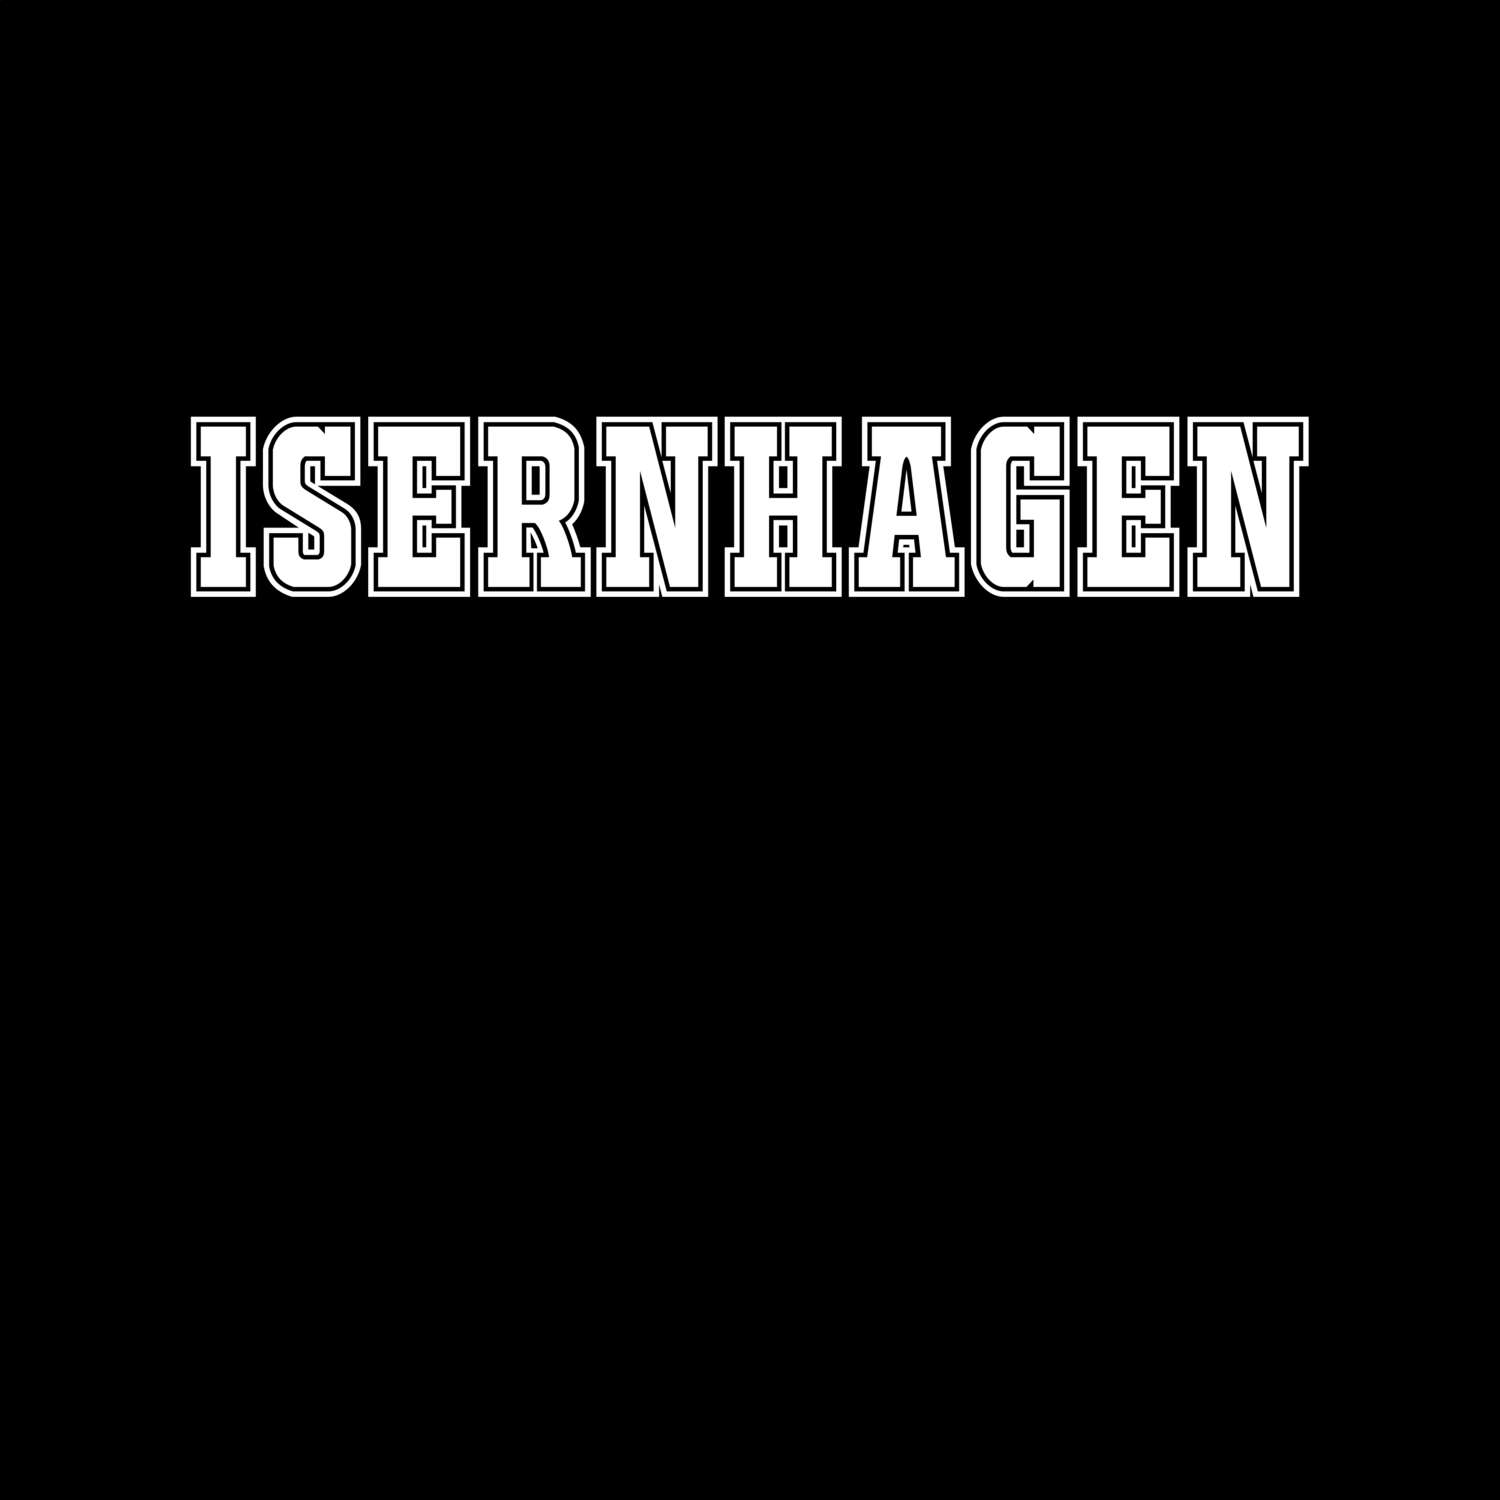 Isernhagen T-Shirt »Classic«